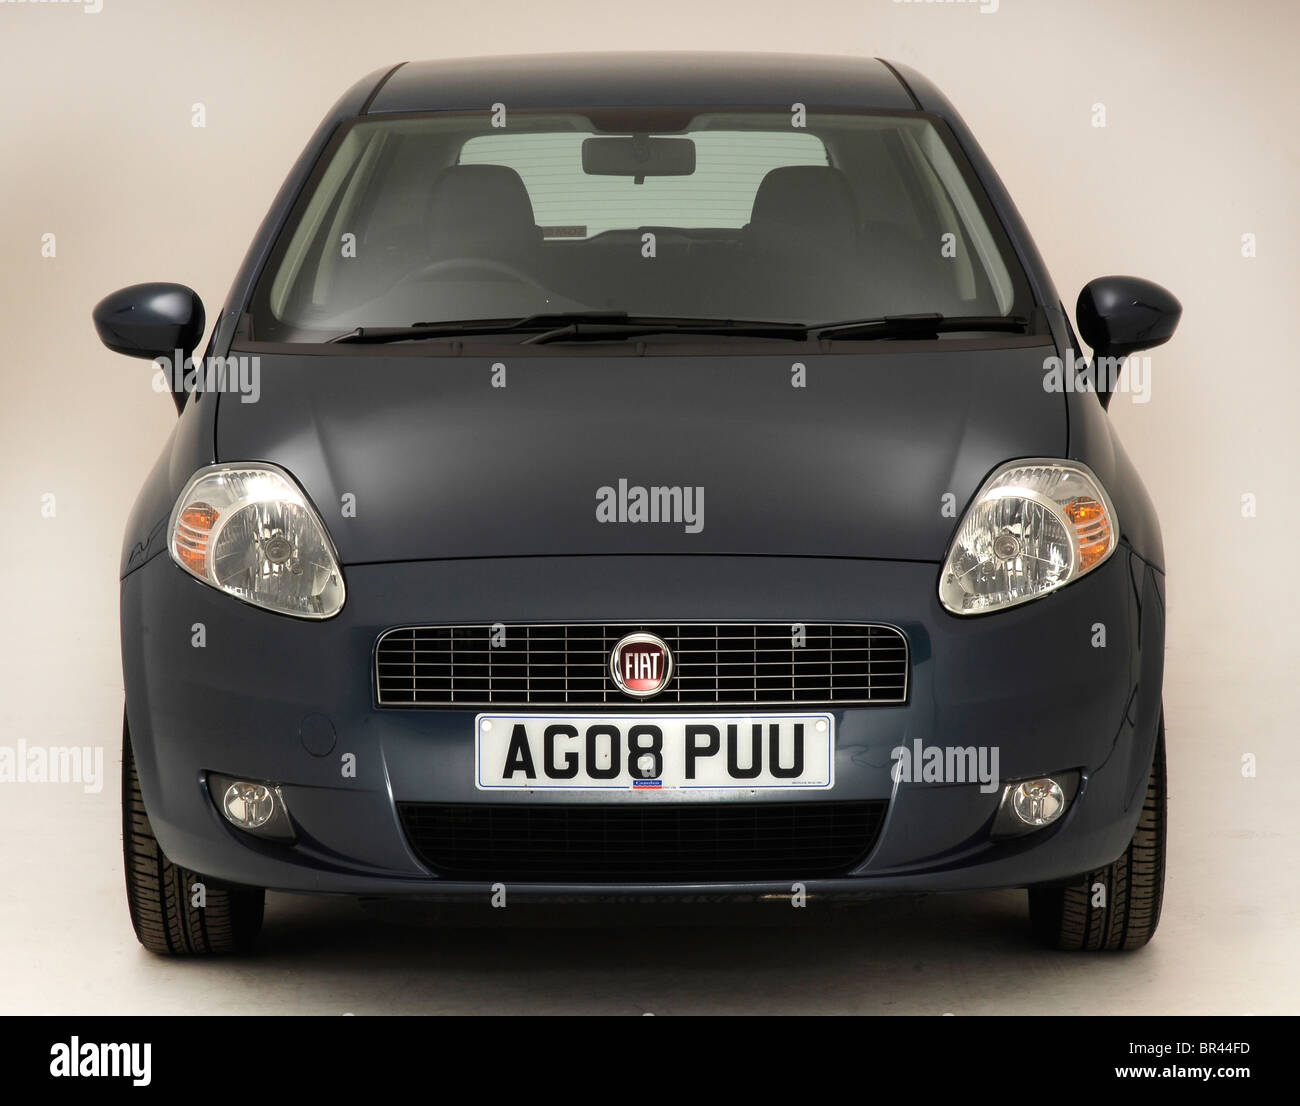 2008 Fiat Punto Stock Photo